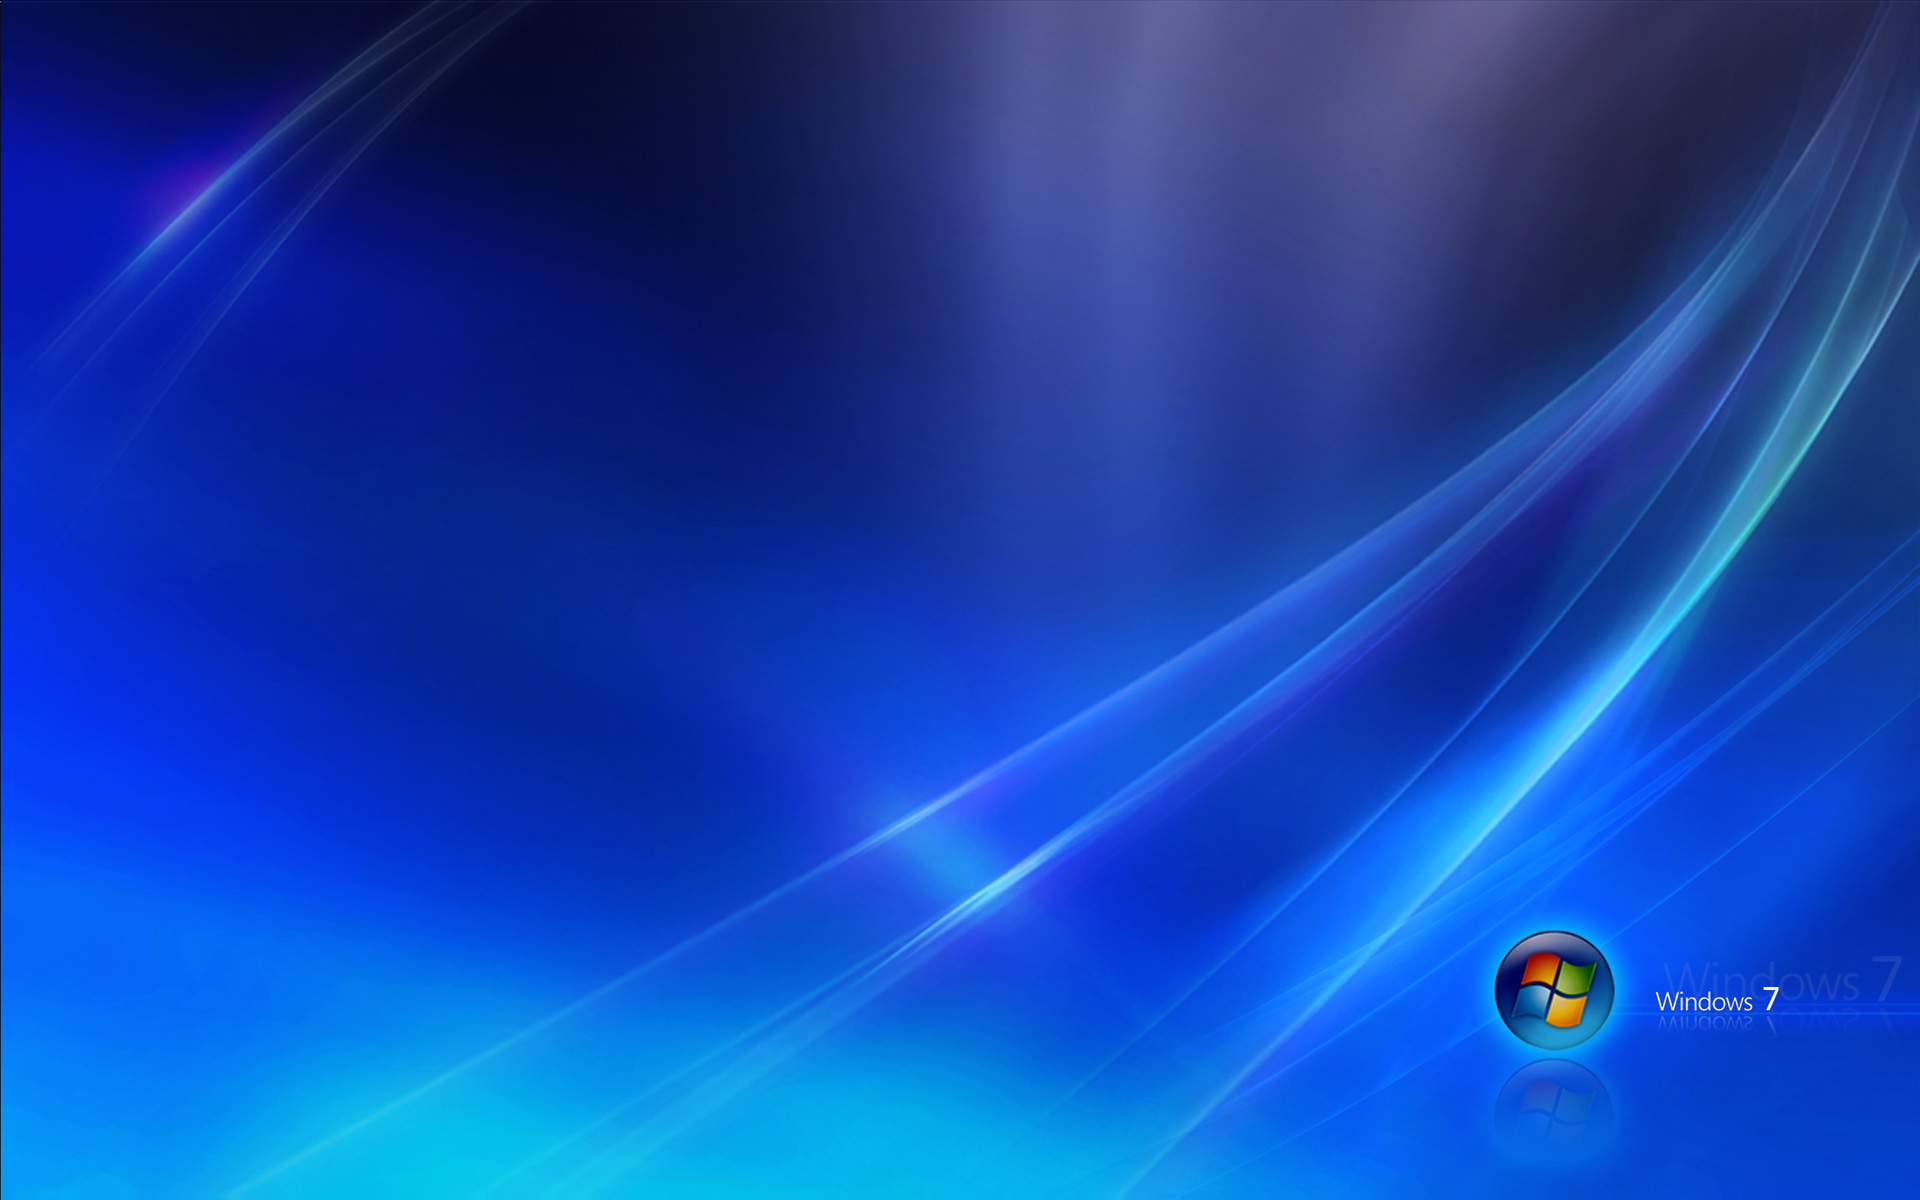 Hãy để hình nền Windows 7 mang đến một nét độc đáo và phong phú cho màn hình máy tính của bạn. Với những hình ảnh sinh động và đầy sắc màu, bộ sưu tập hình nền Windows 7 sẽ đem đến cho bạn những trải nghiệm tuyệt vời về màu sắc, cảm xúc và sự độc đáo.